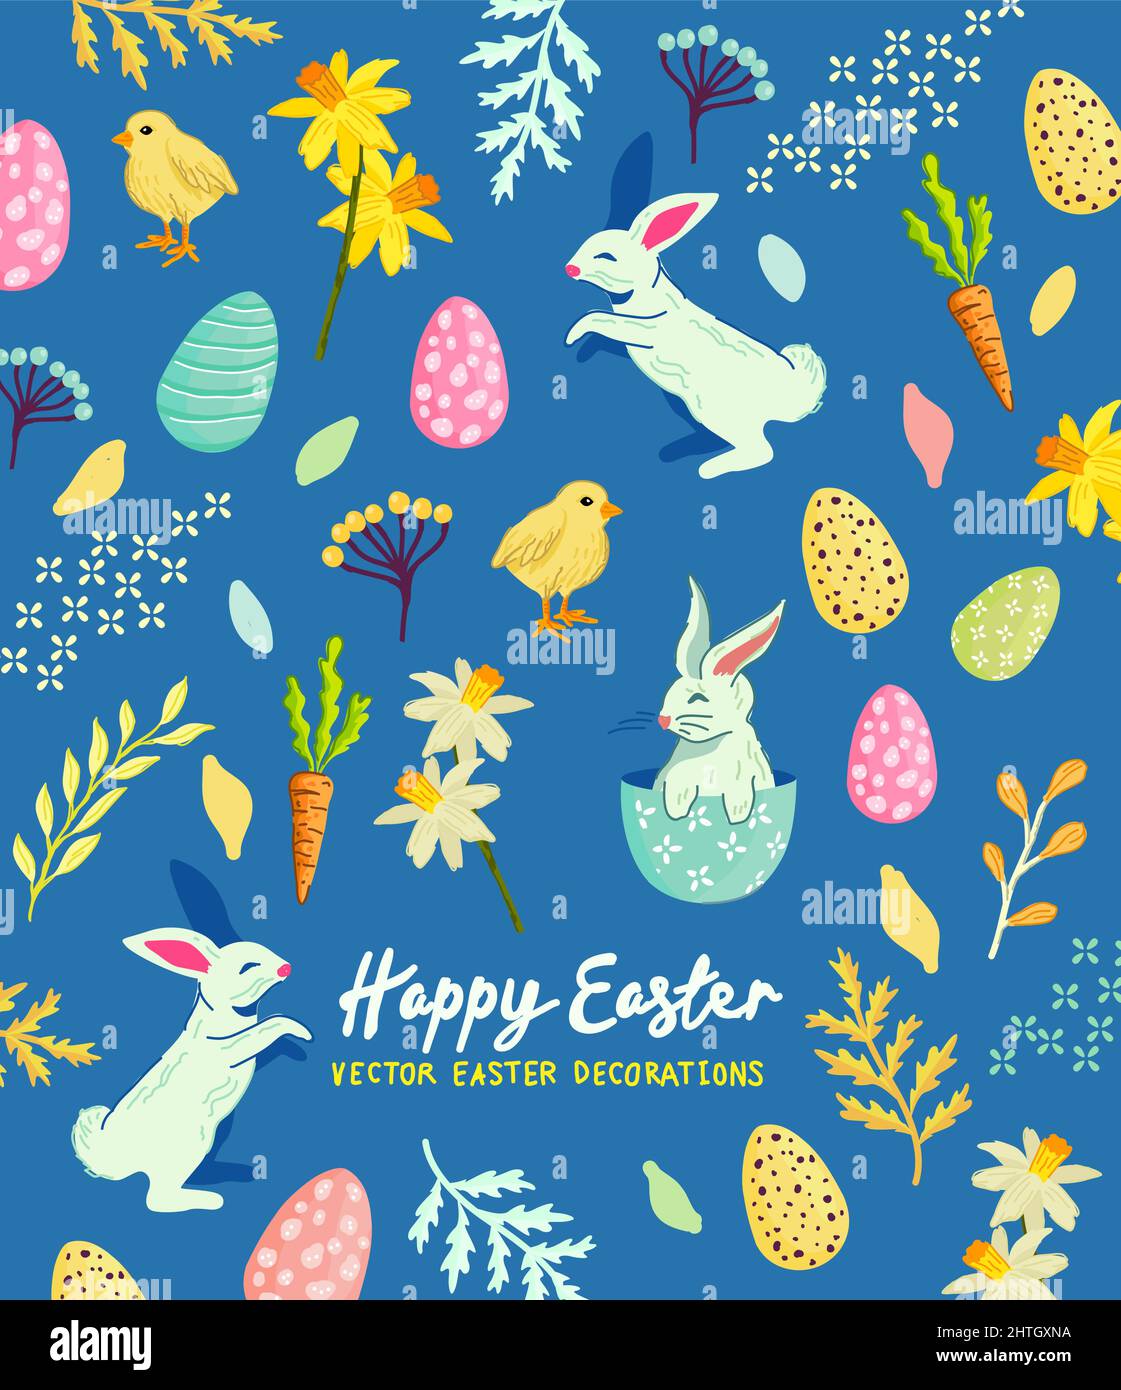 Fiestas de Pascua de fondo con conejos, huevos y diseños florales. Ilustración vectorial. Ilustración del Vector